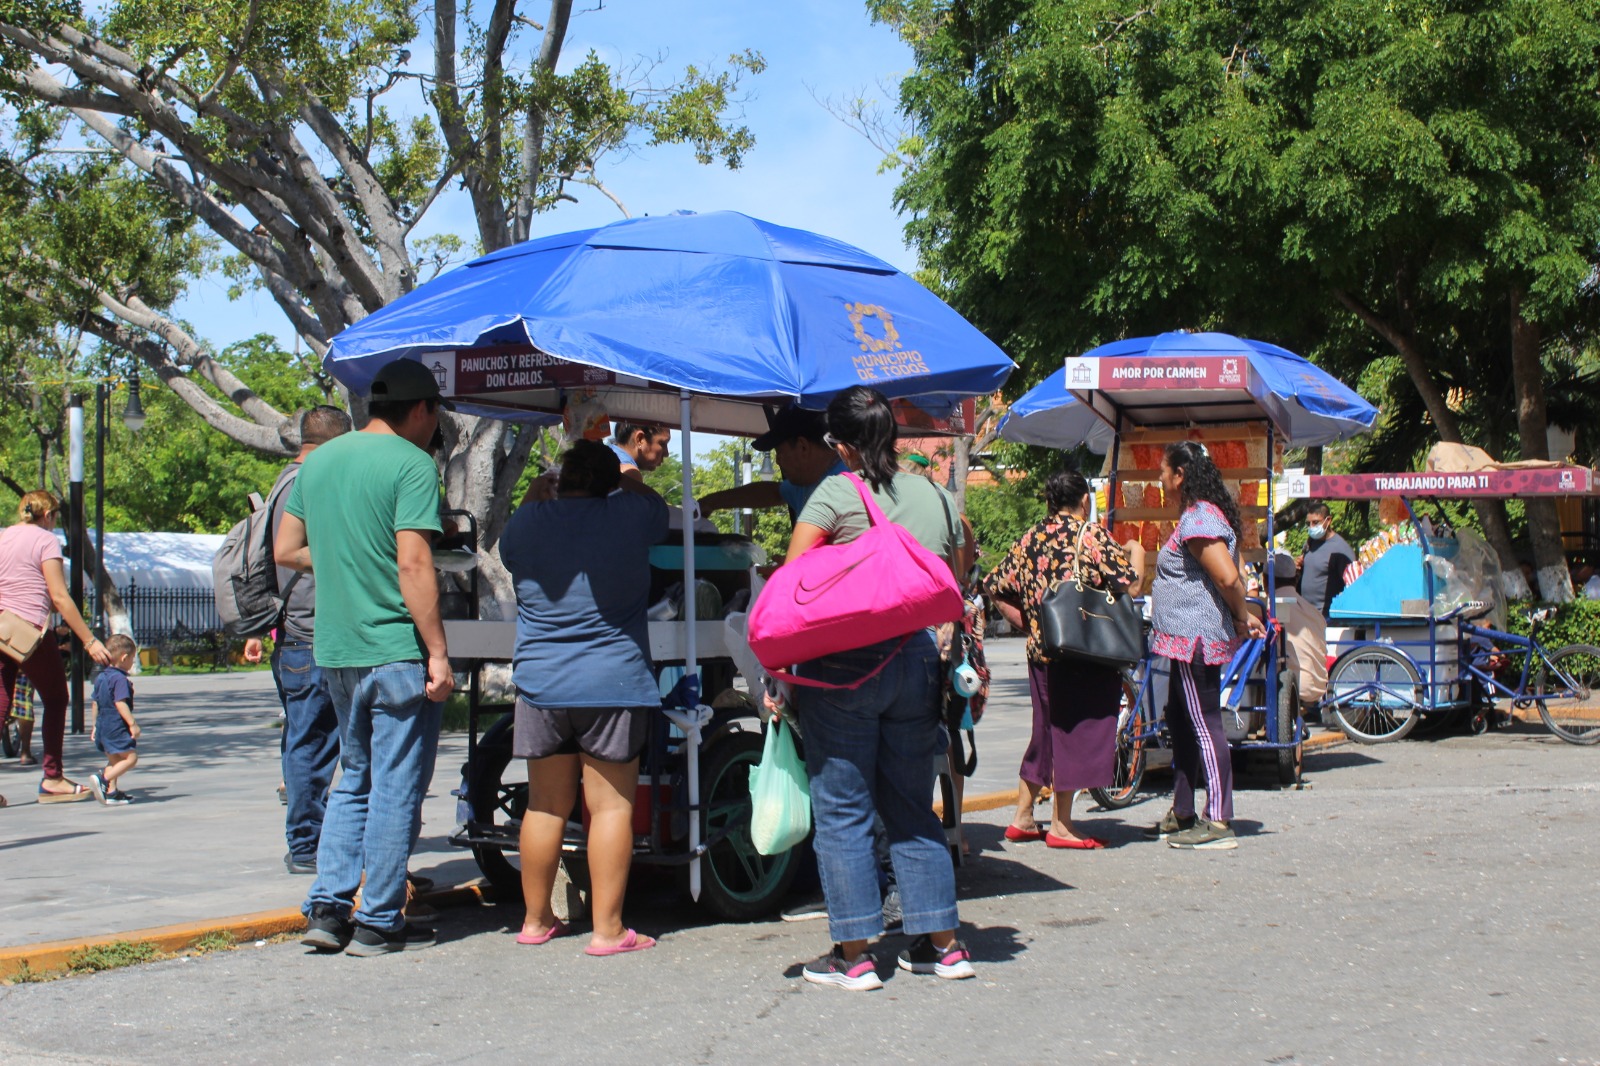 Posible riesgo de salud pública consumir alimentos en vía pública: En Ciudad del Carmen